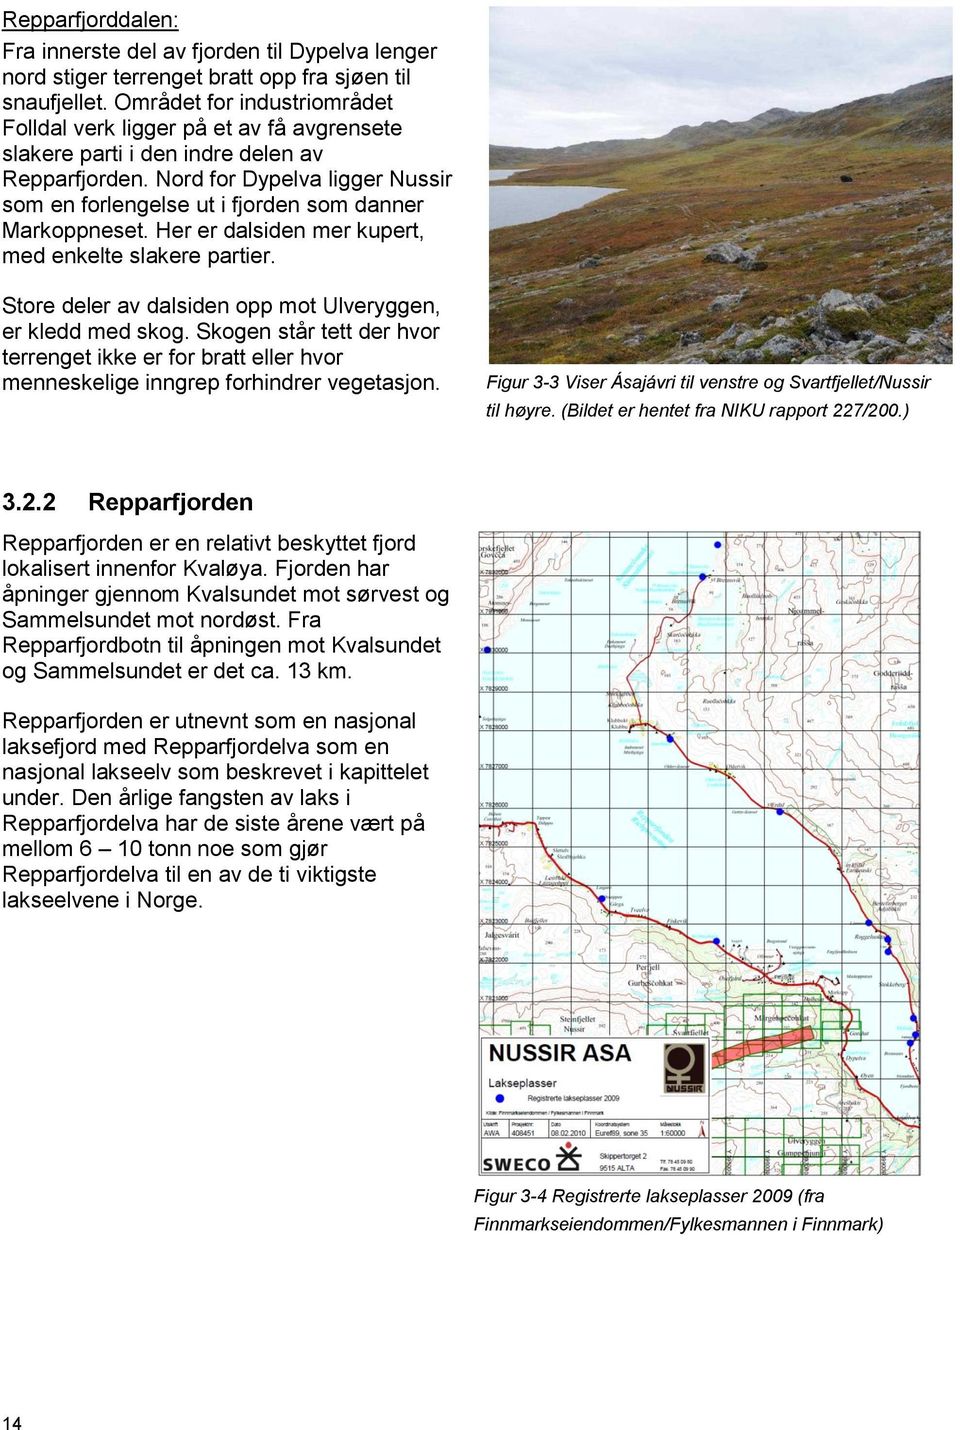 Nord for Dypelva ligger Nussir som en forlengelse ut i fjorden som danner Markoppneset. Her er dalsiden mer kupert, med enkelte slakere partier.